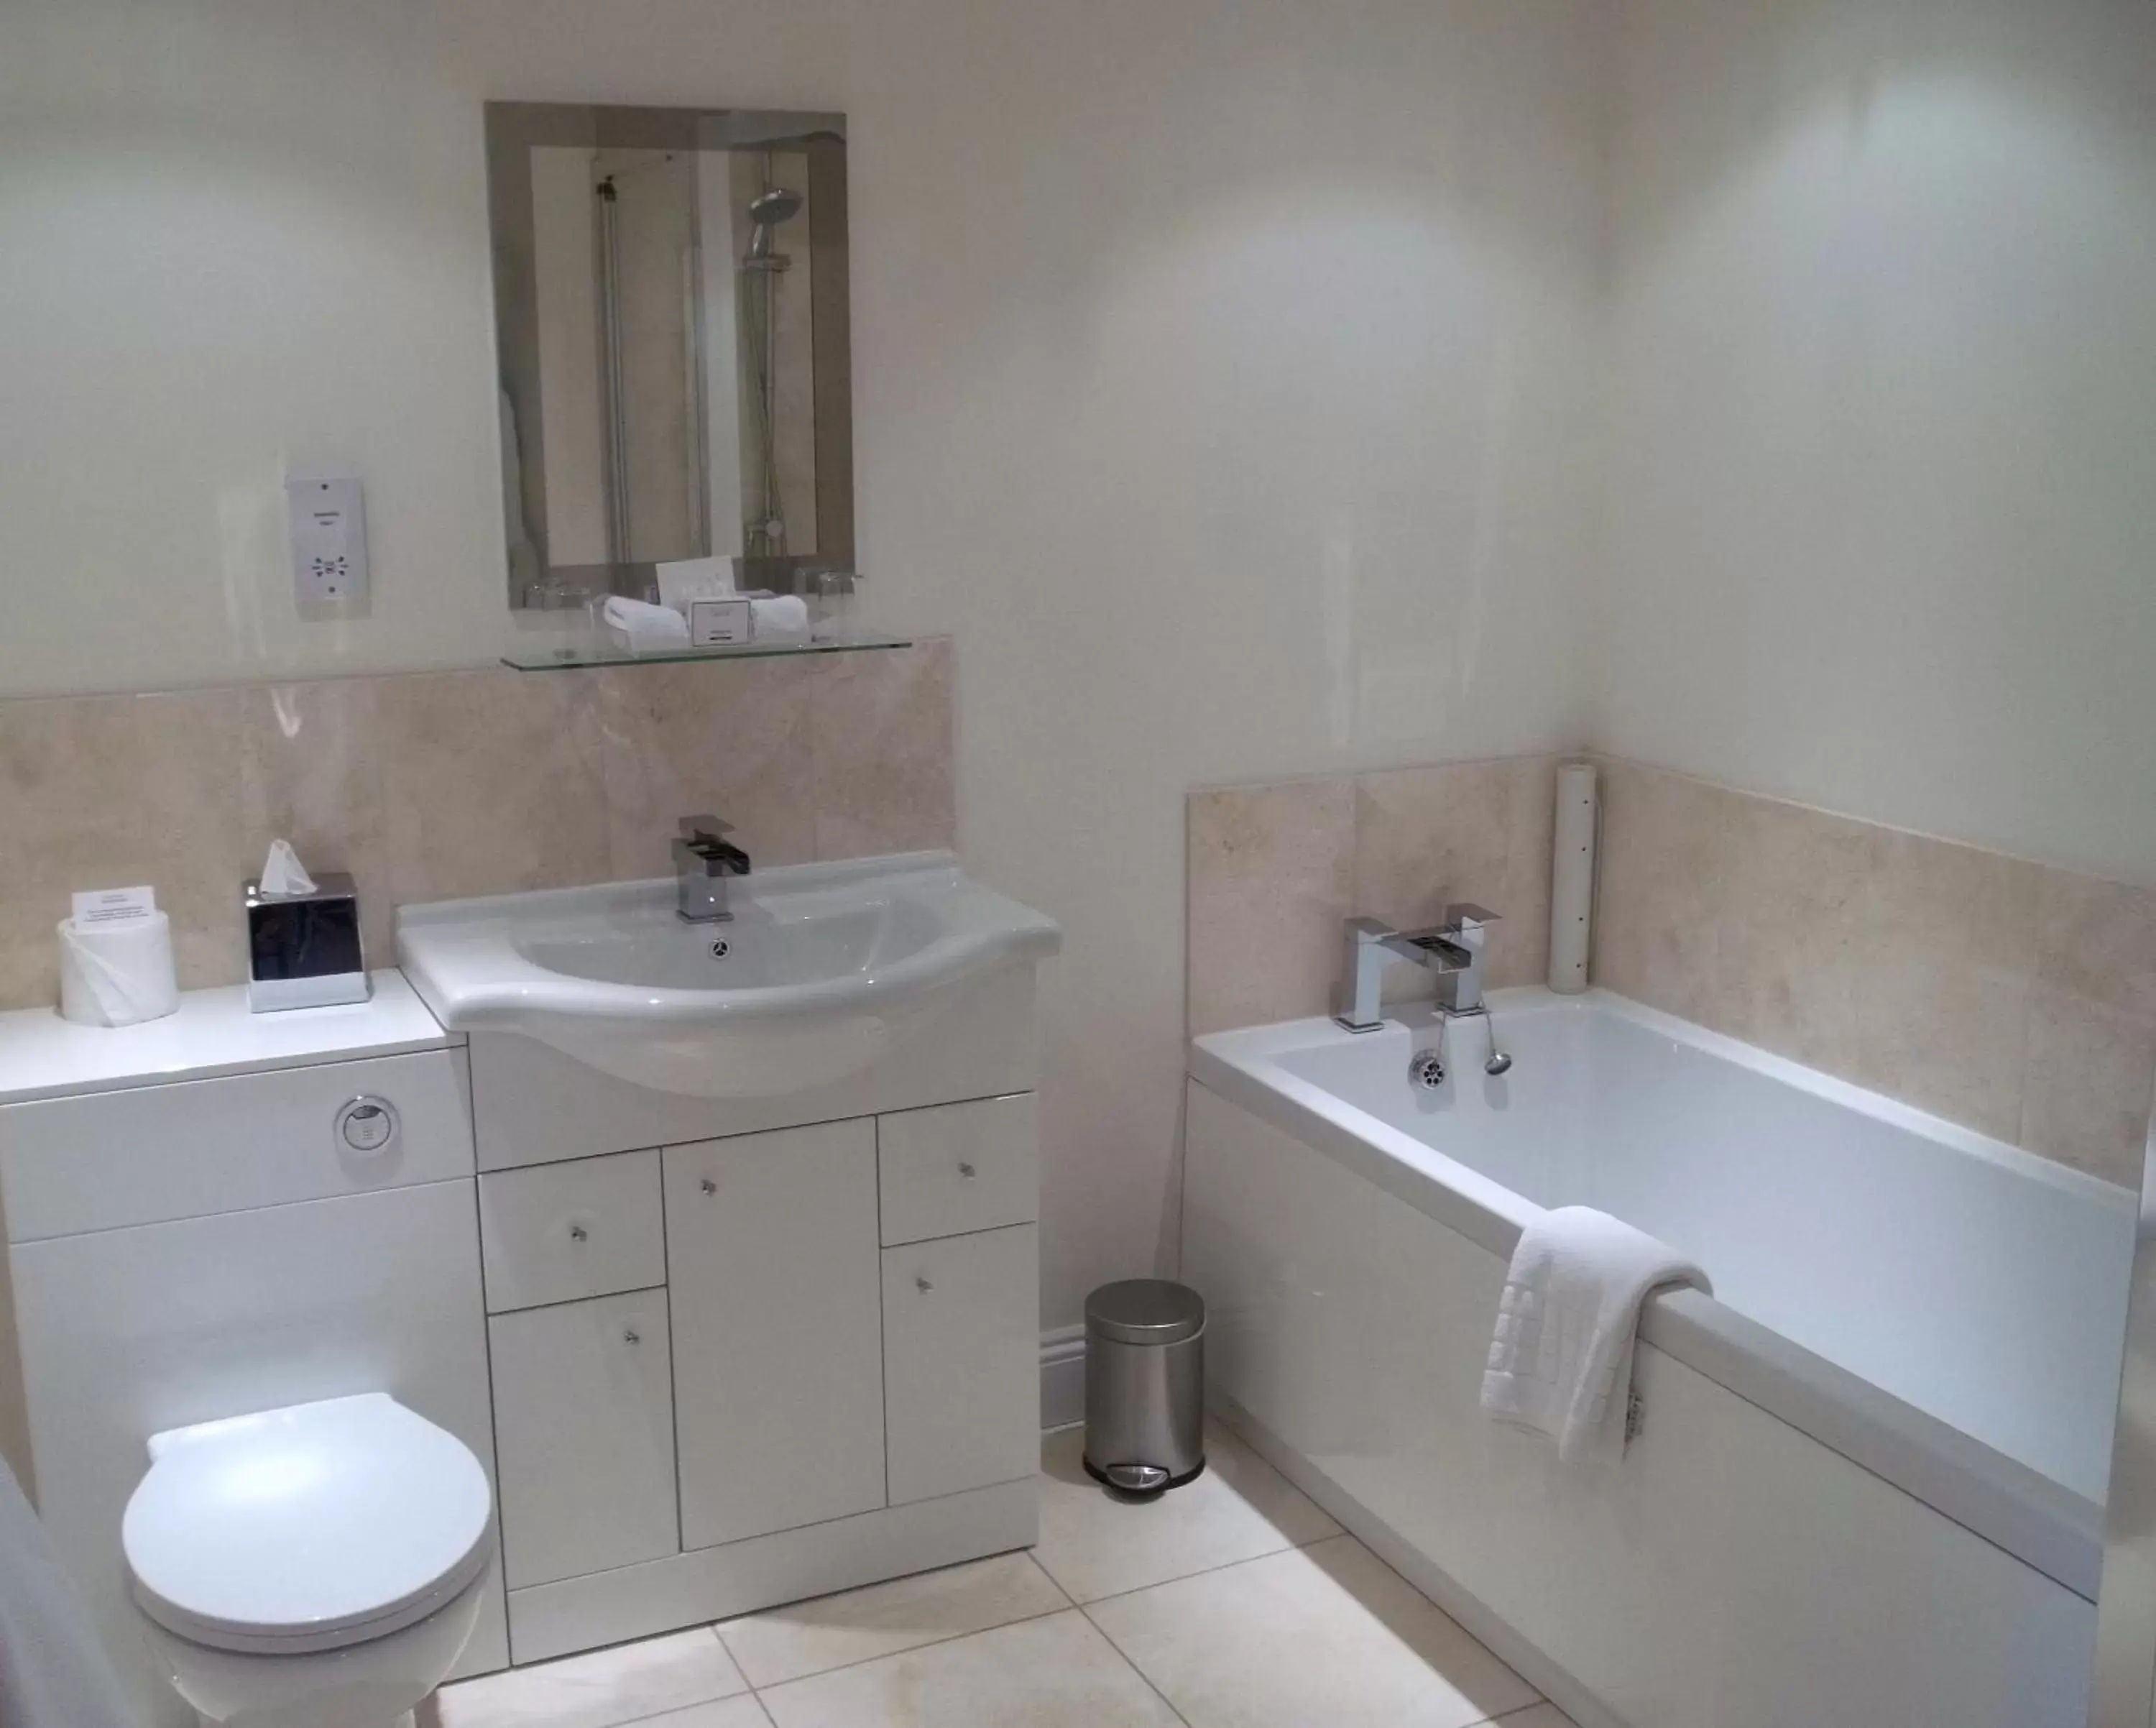 Bathroom in The Swan Hotel, Wells, Somerset